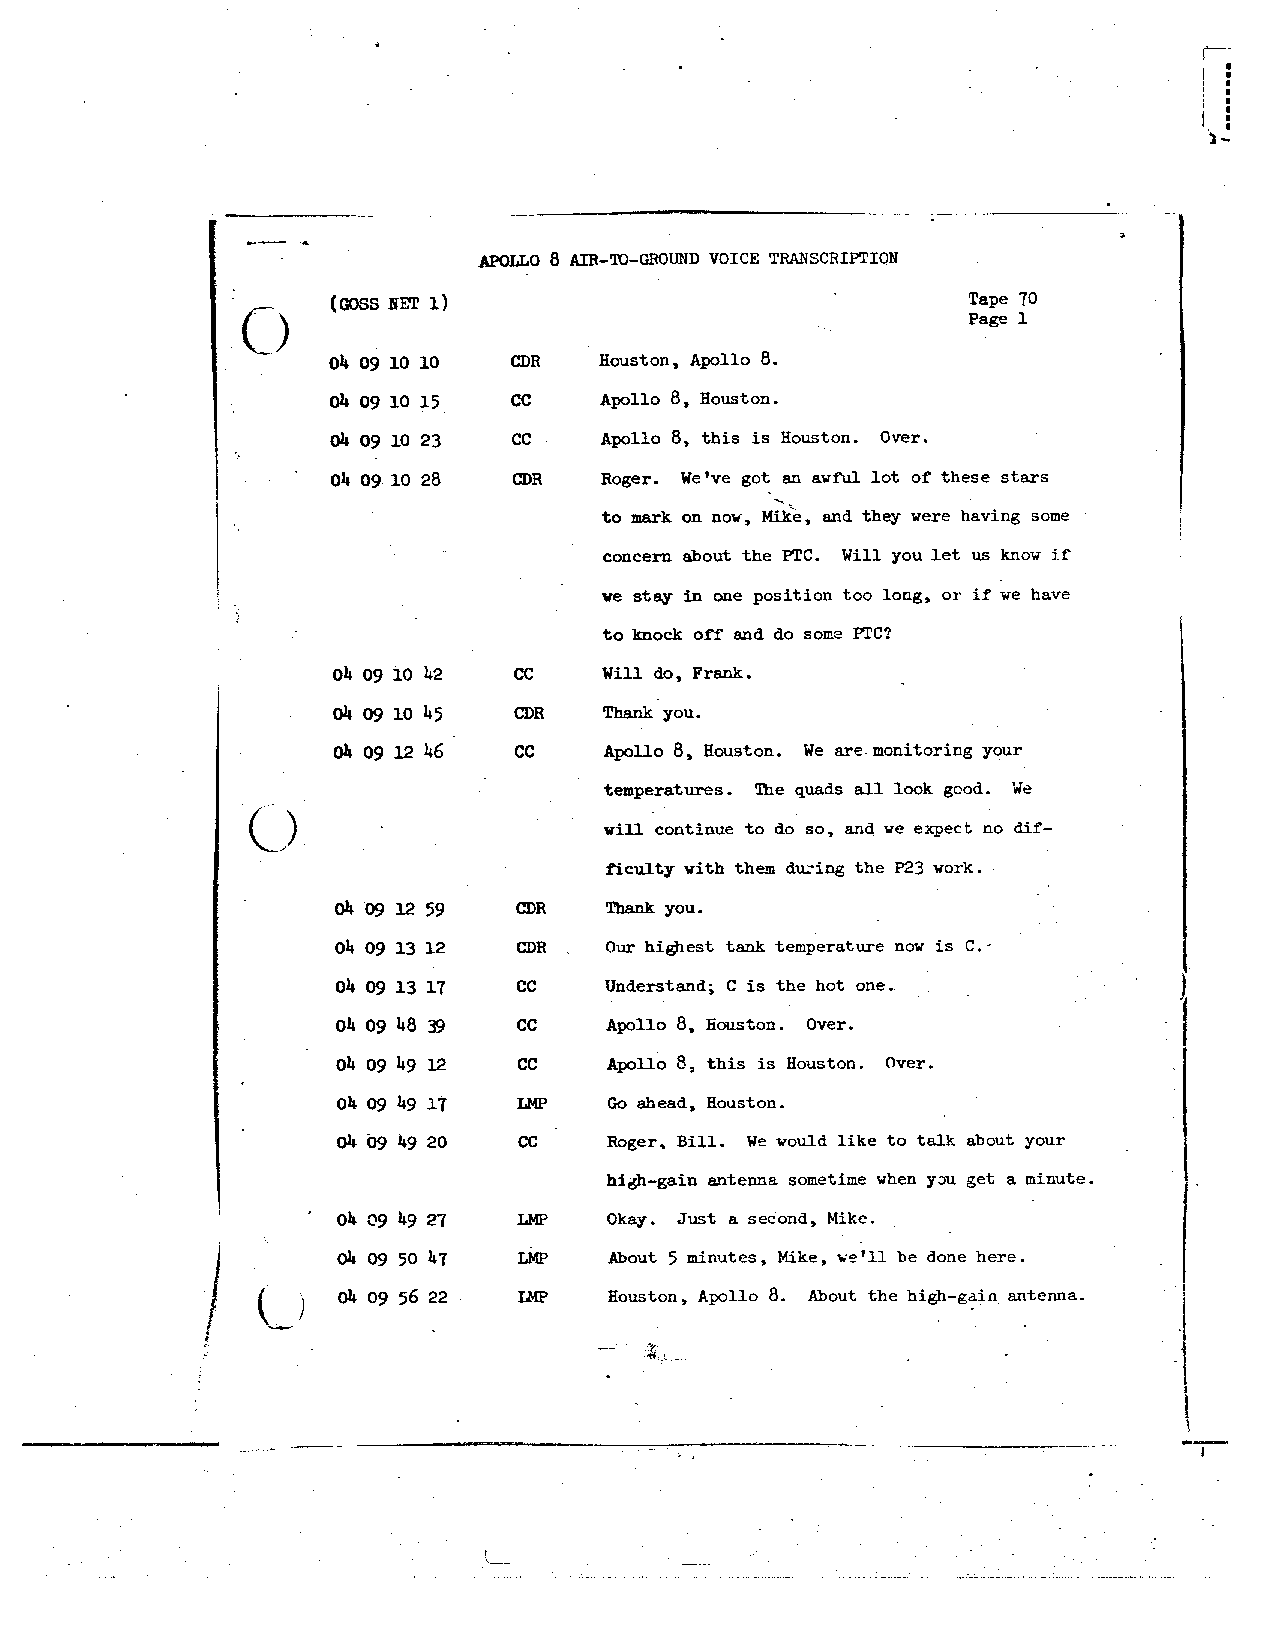 Page 559 of Apollo 8’s original transcript